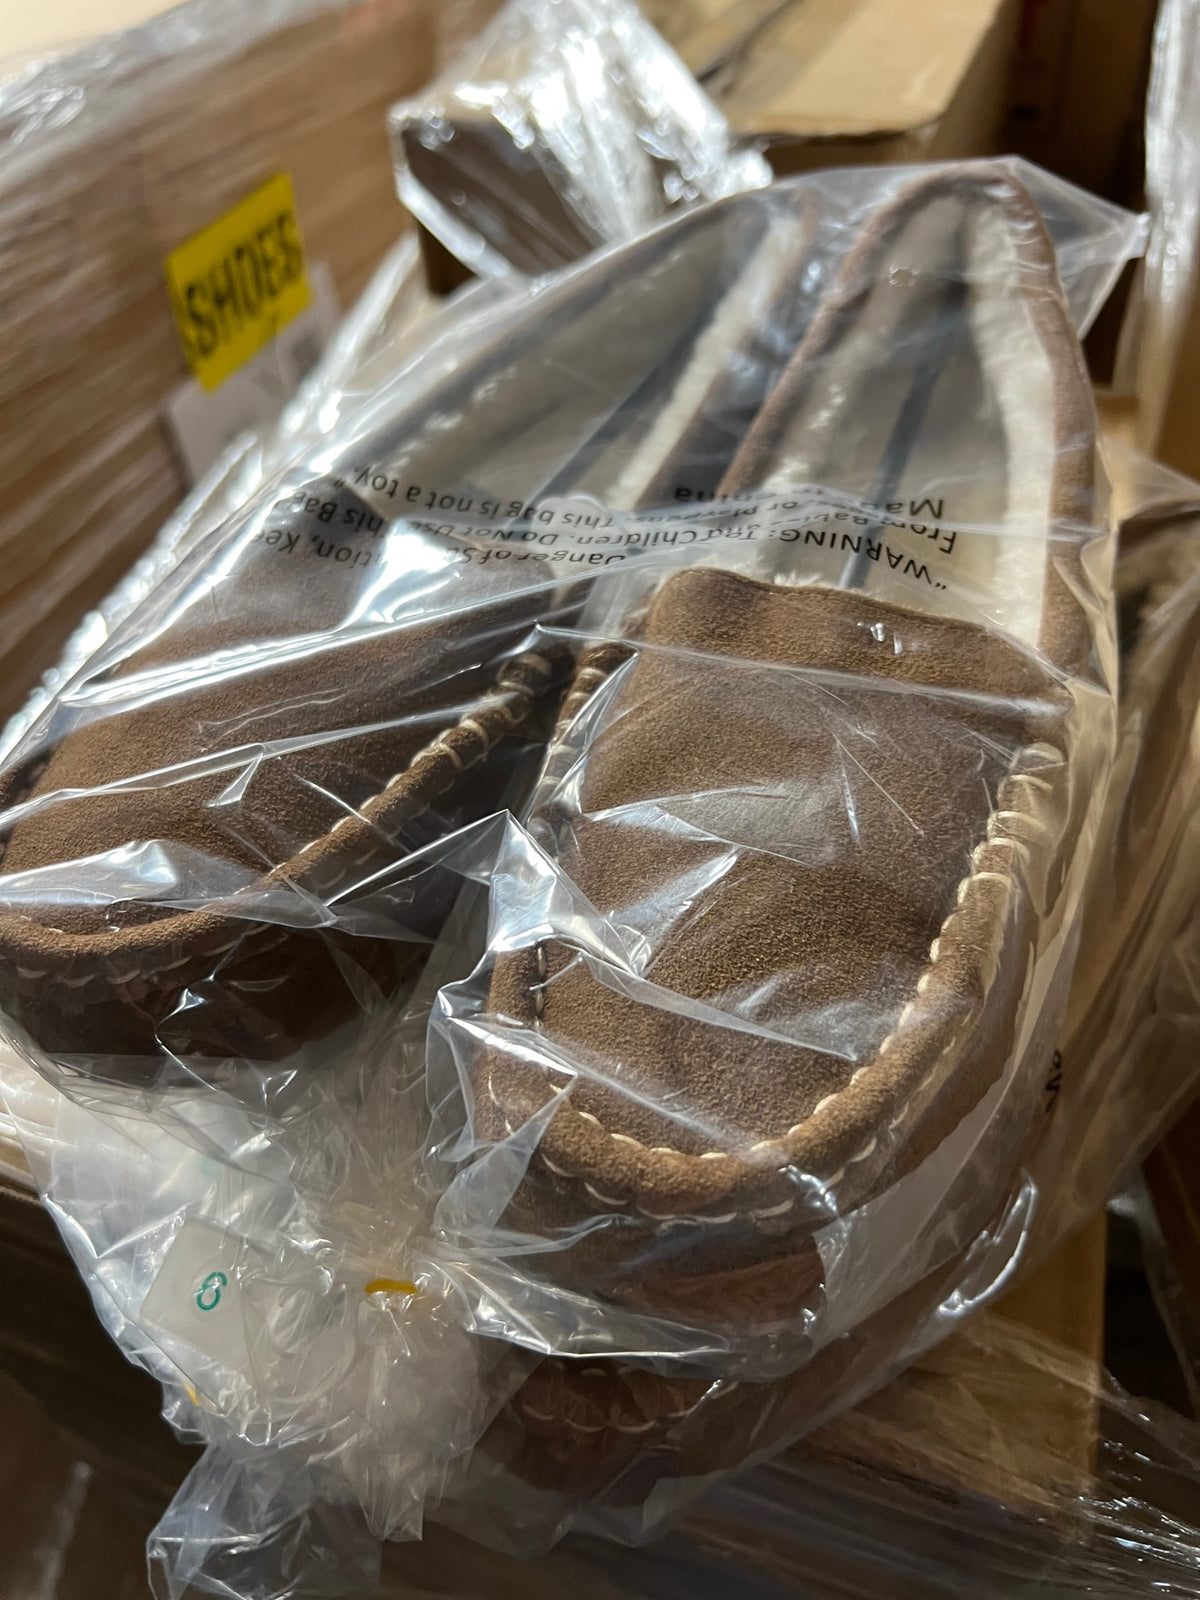 New Case Pack Target Footwear TRGFW0810-8